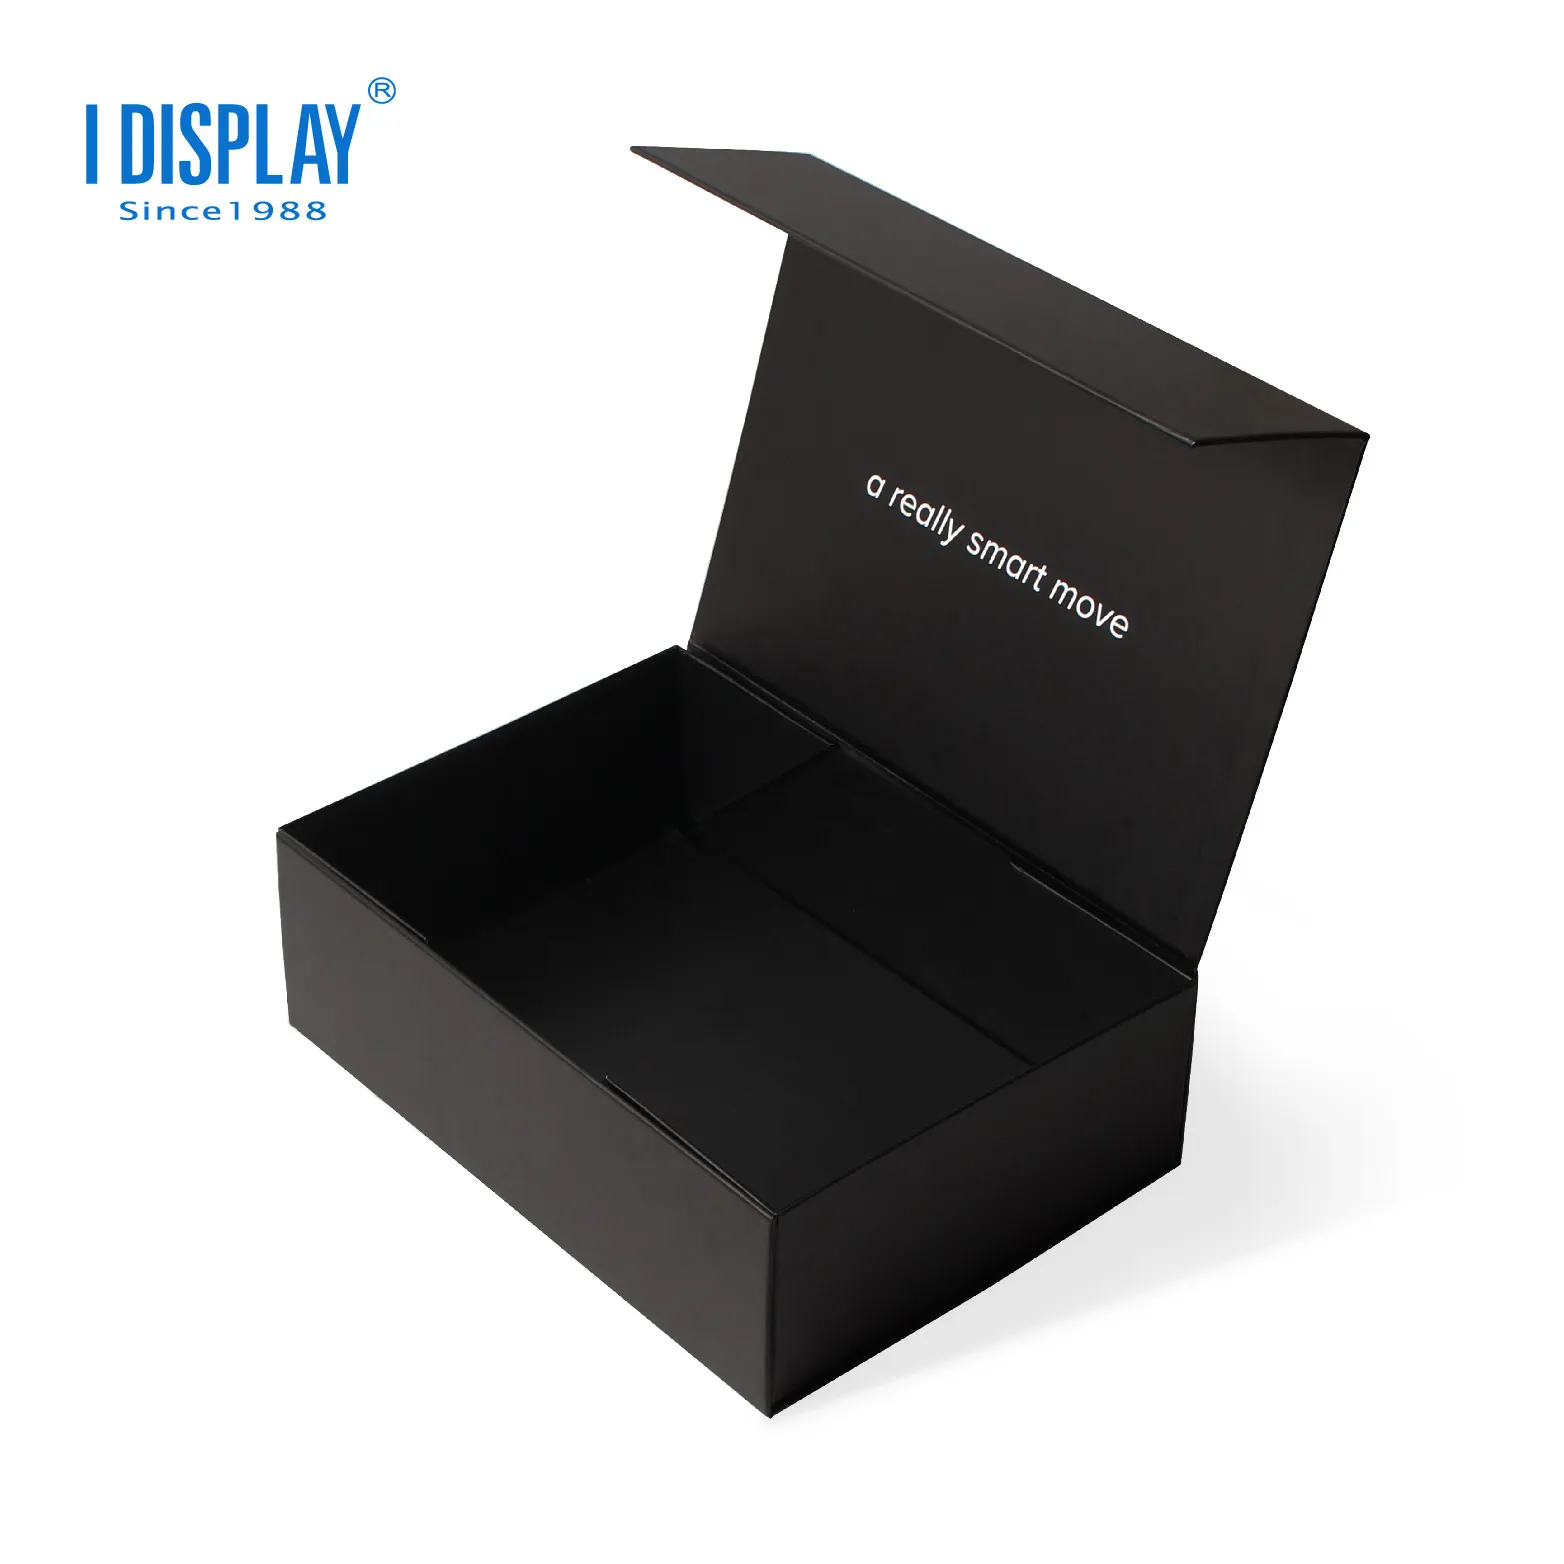 T shirt ekran standı evlilik davetiyesi kağıt hediye kutusu kutusu ile paket